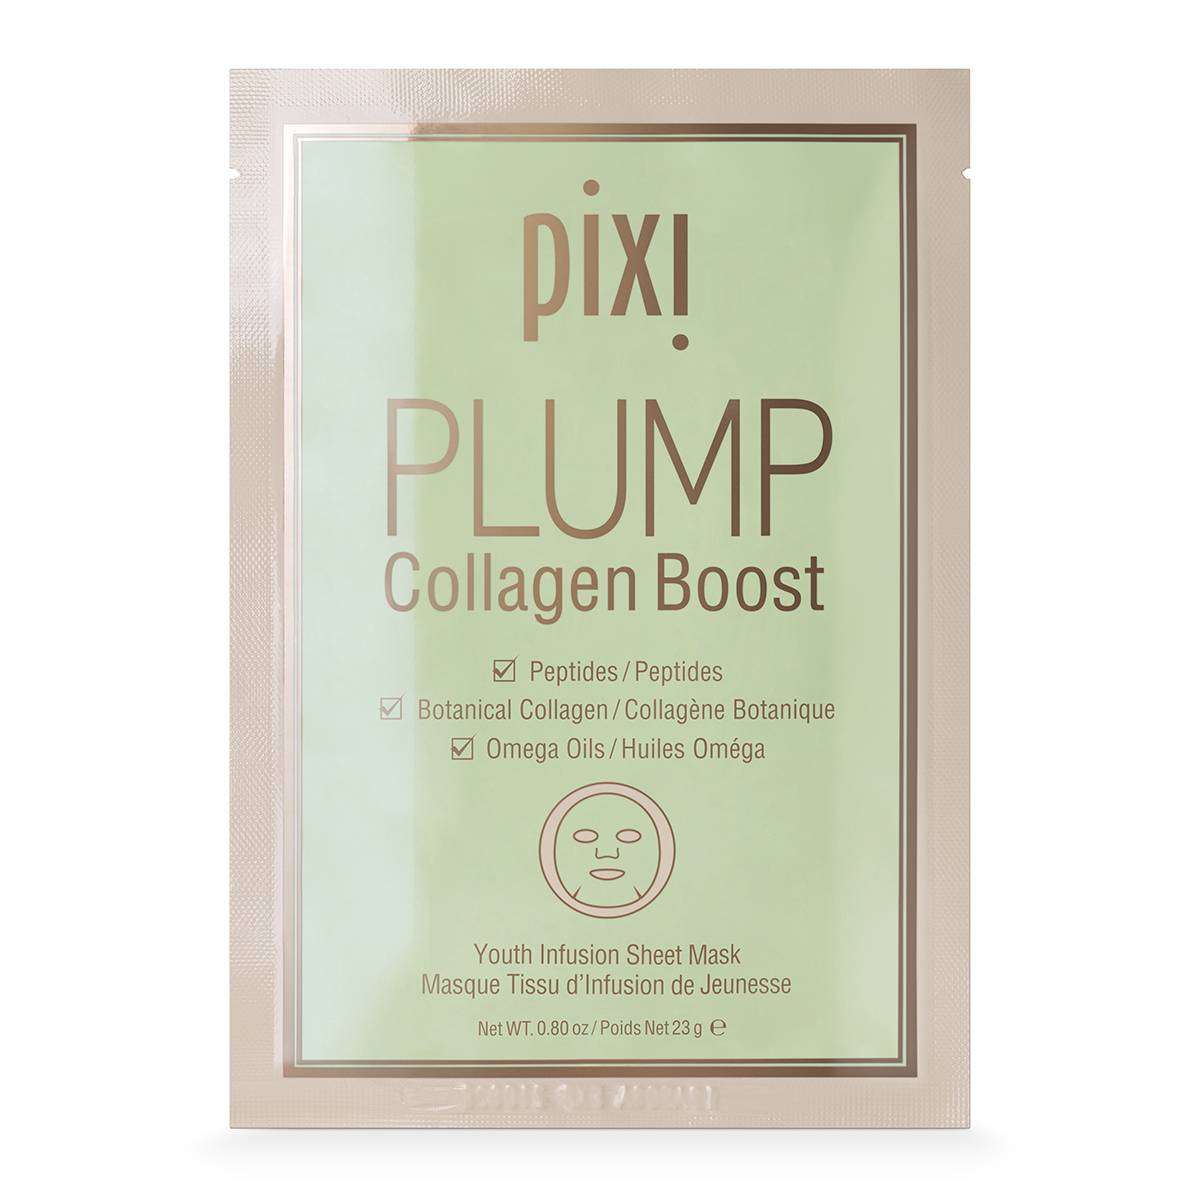 Maska Plump Collagen Boost Pixi Beauty